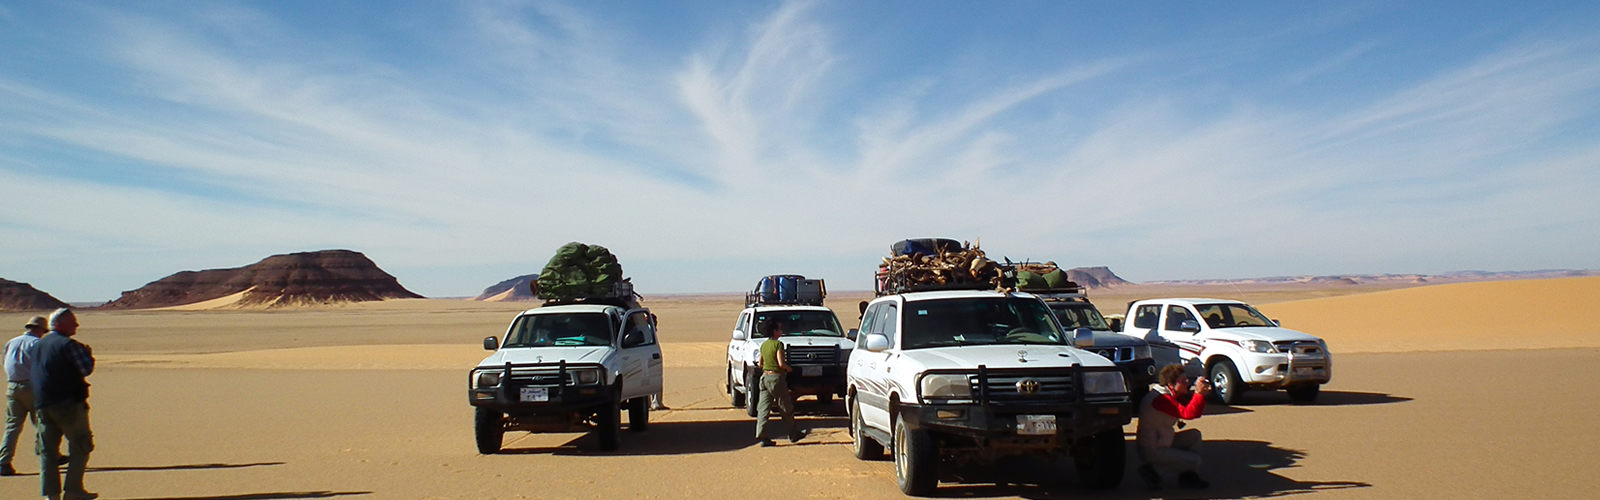 苏丹旅游车队